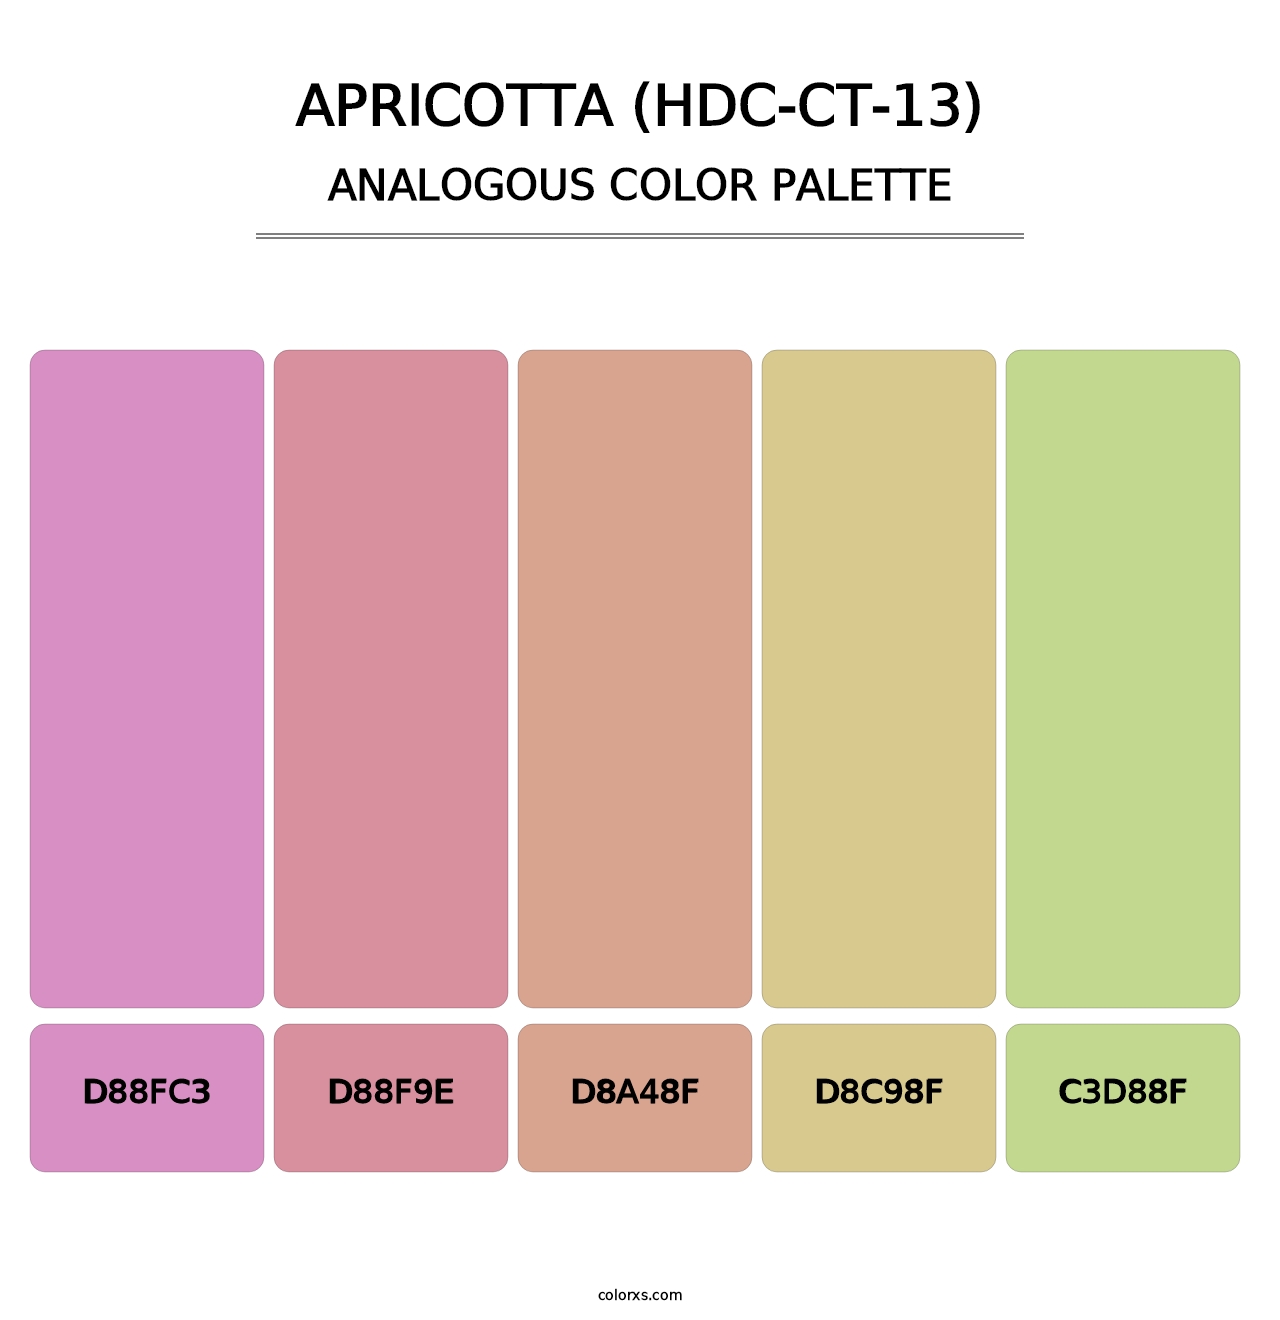 Apricotta (HDC-CT-13) - Analogous Color Palette